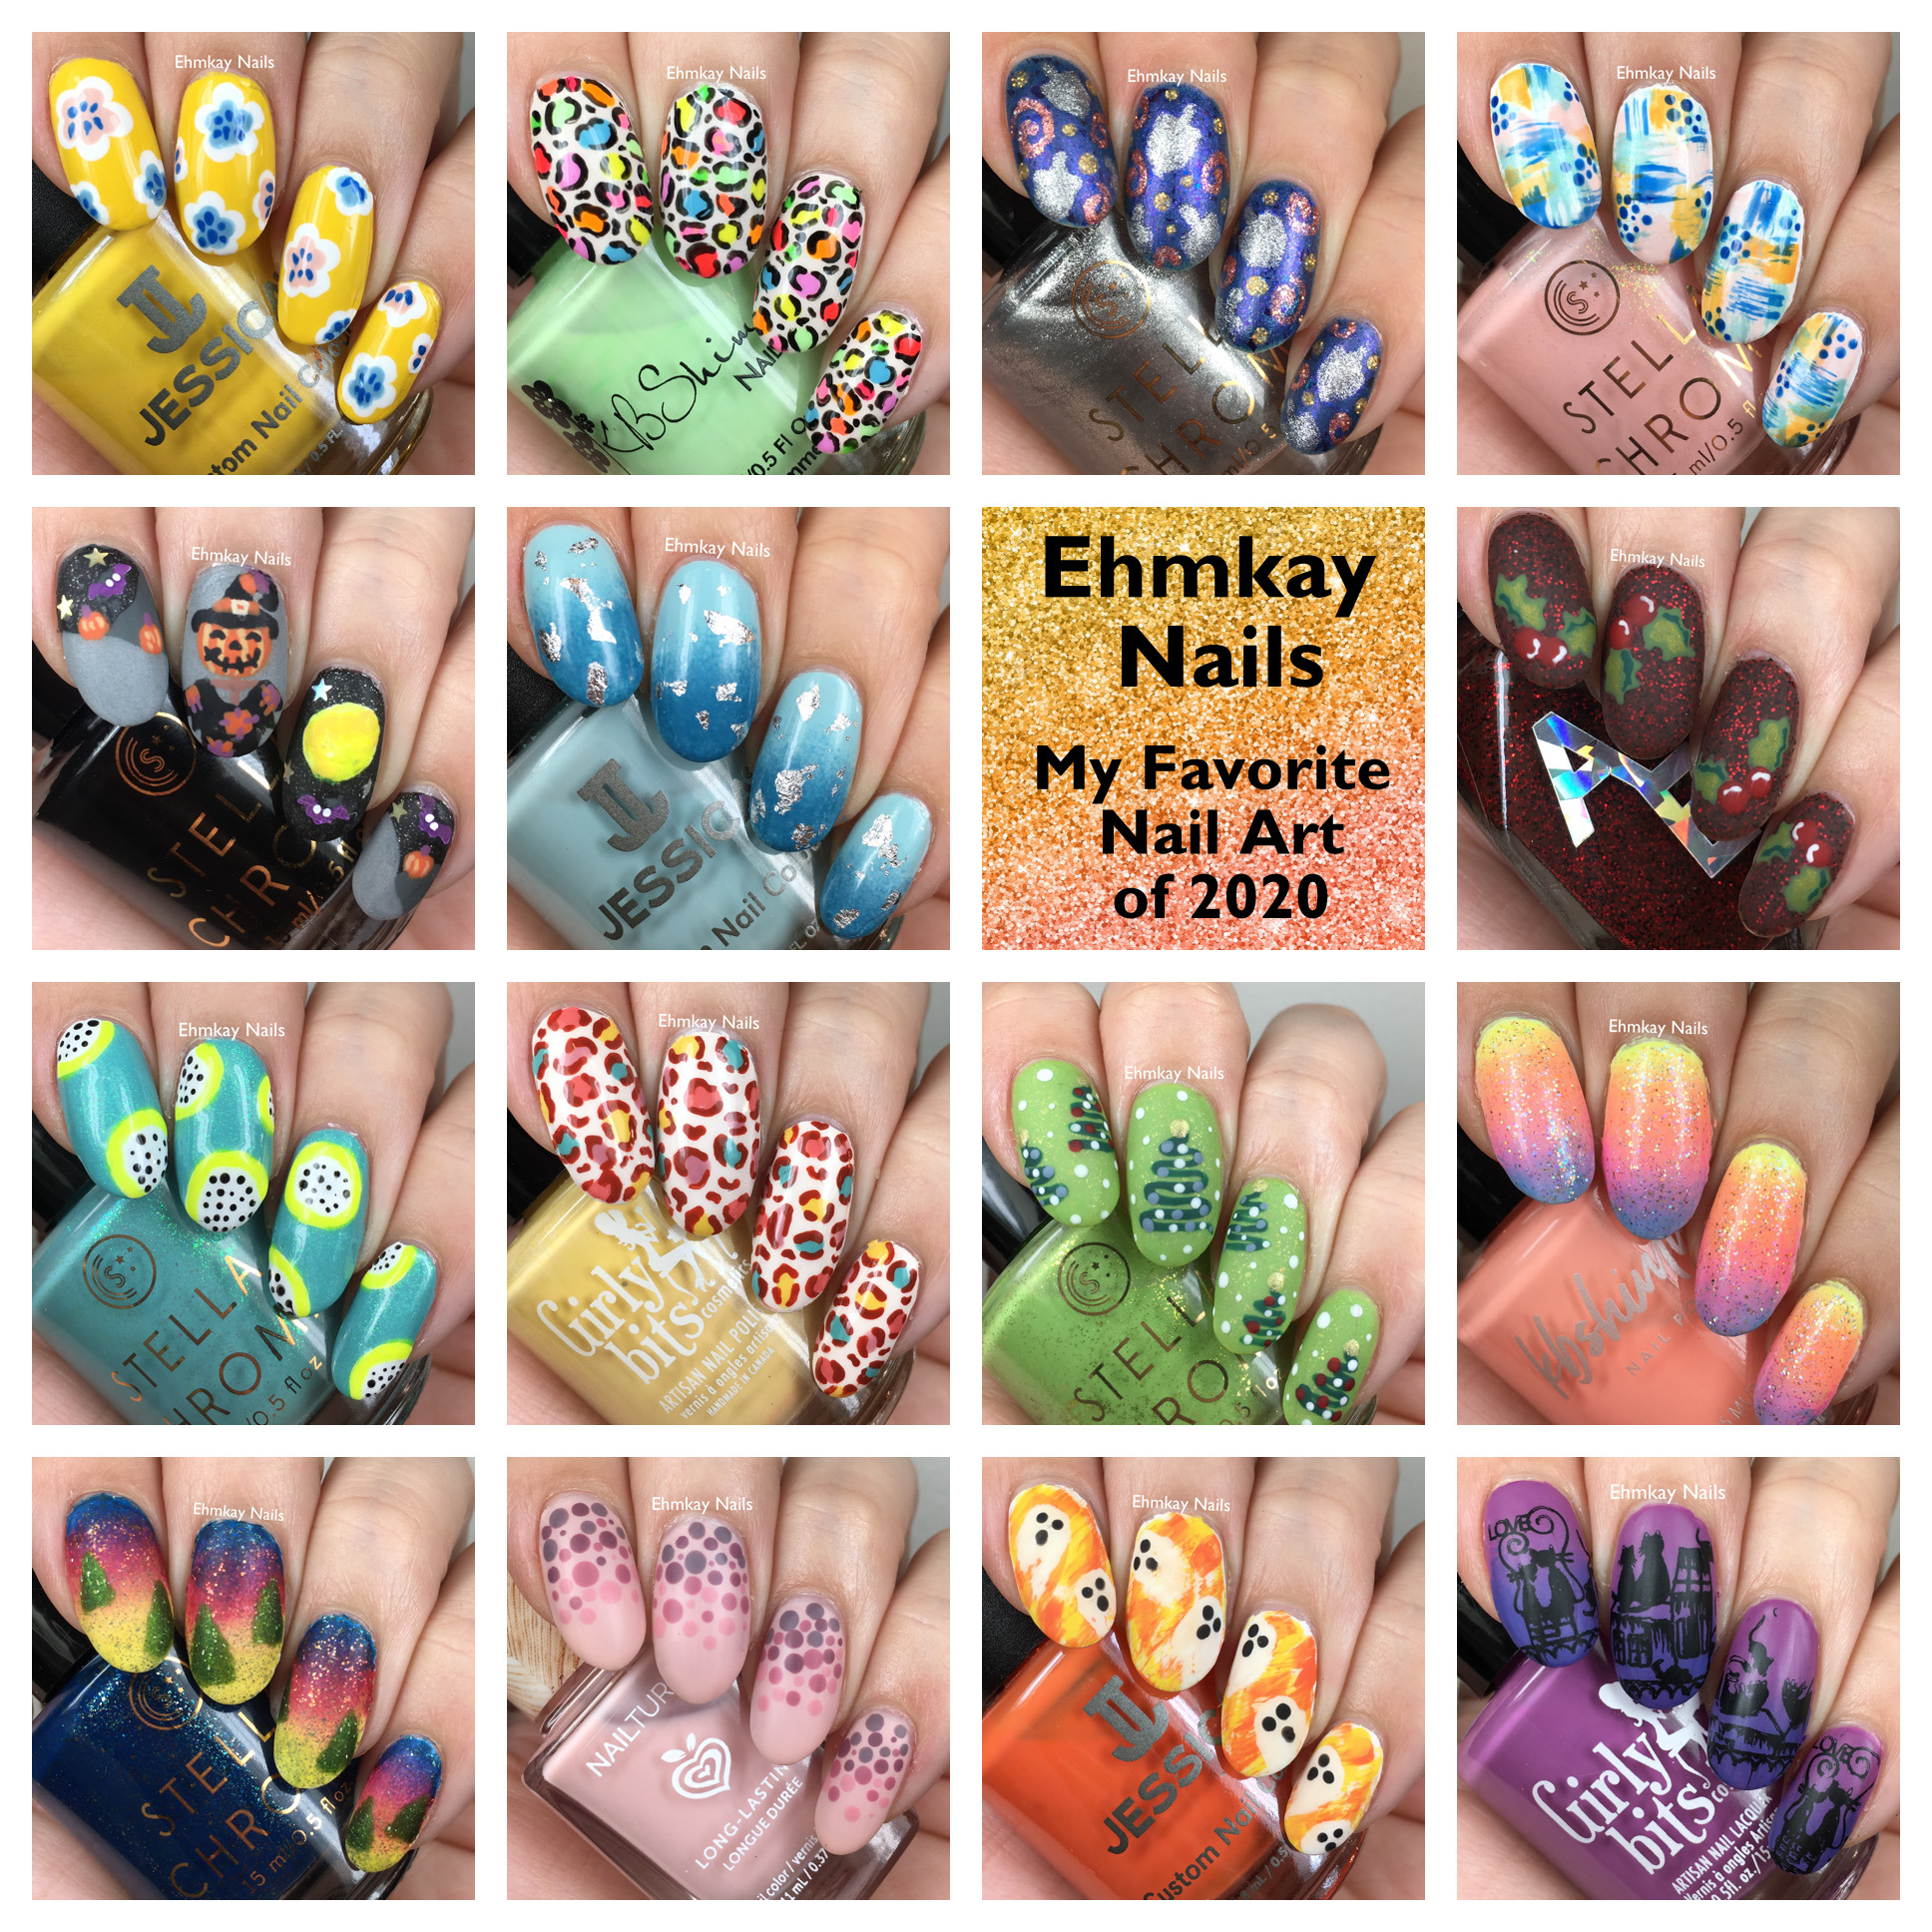 ehmkay nails: My Favorite Nail Arts of 2020